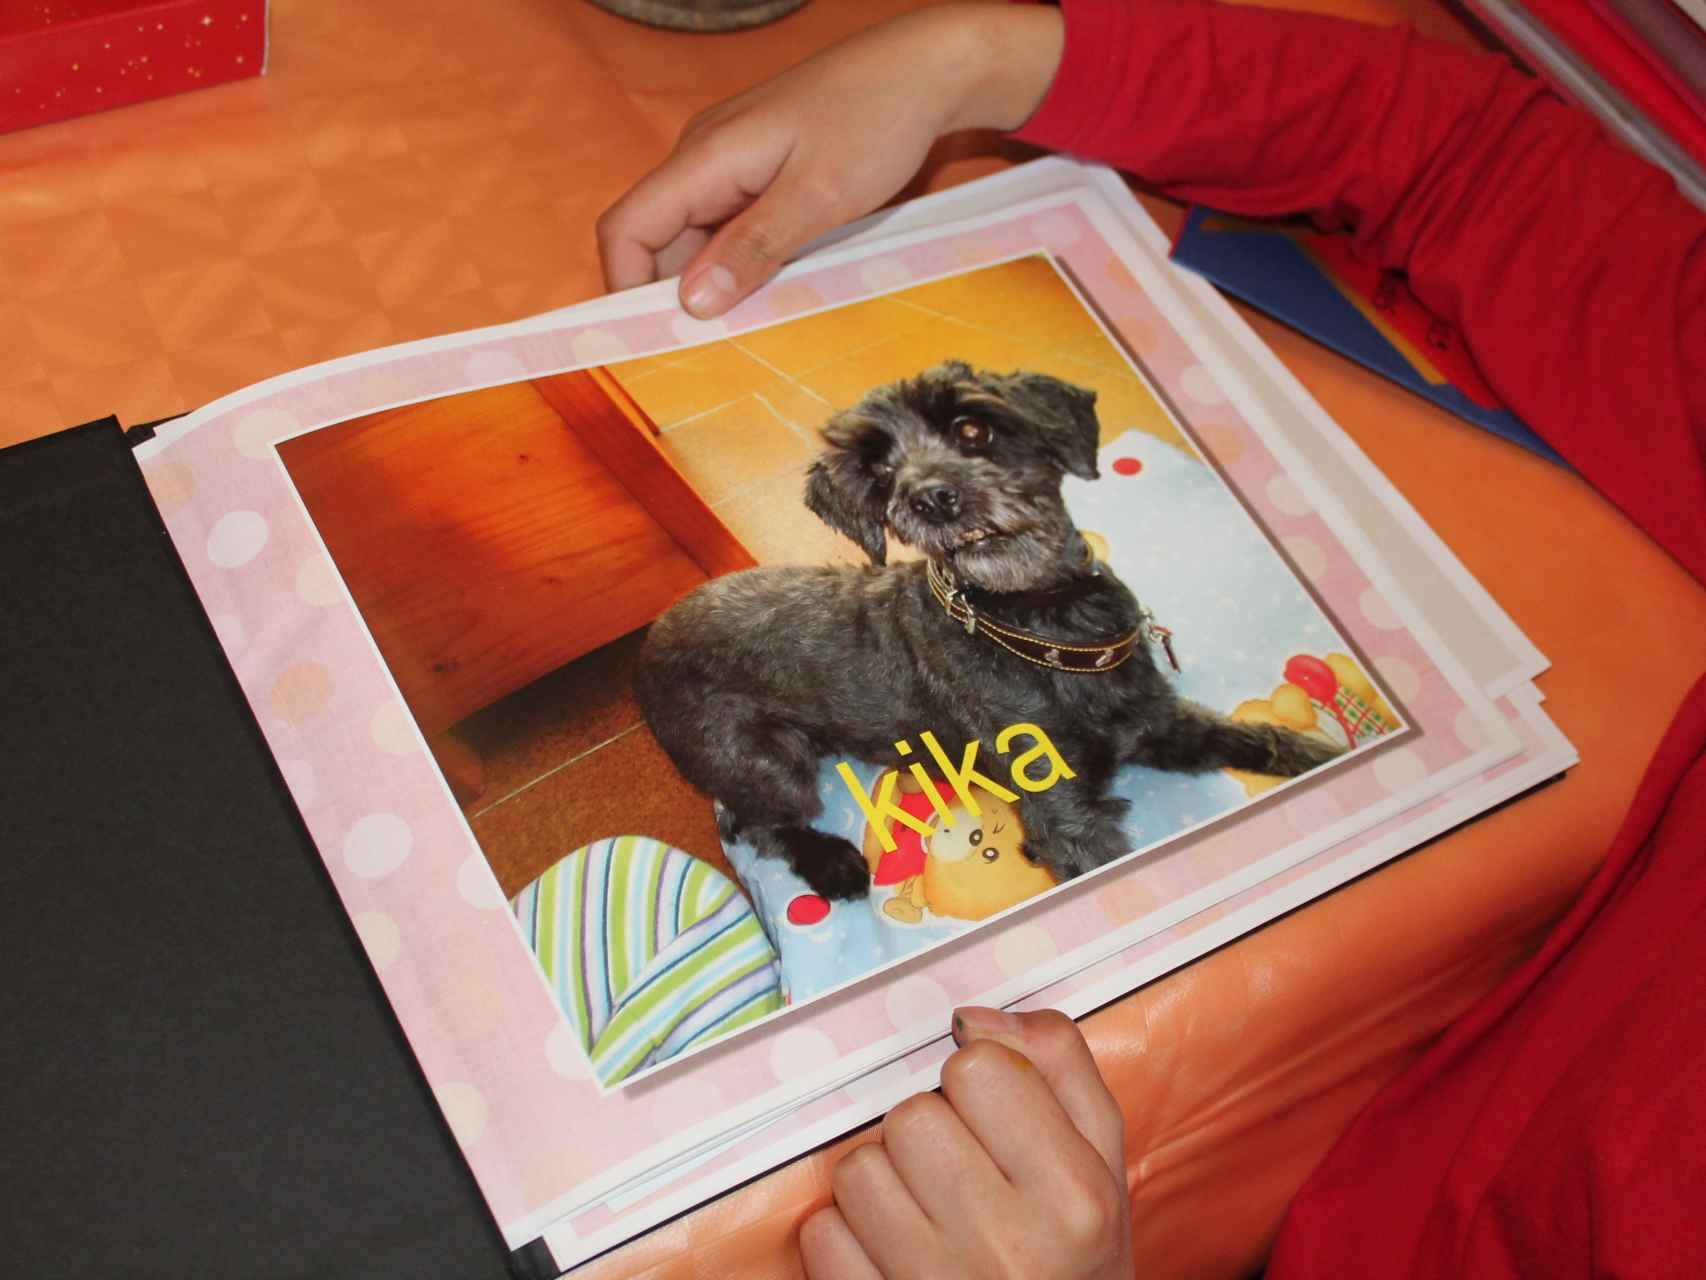 Foto de Kika en el álbum de adopción, la perra que ayudó a María en su proceso de adaptación a su nueva familia.